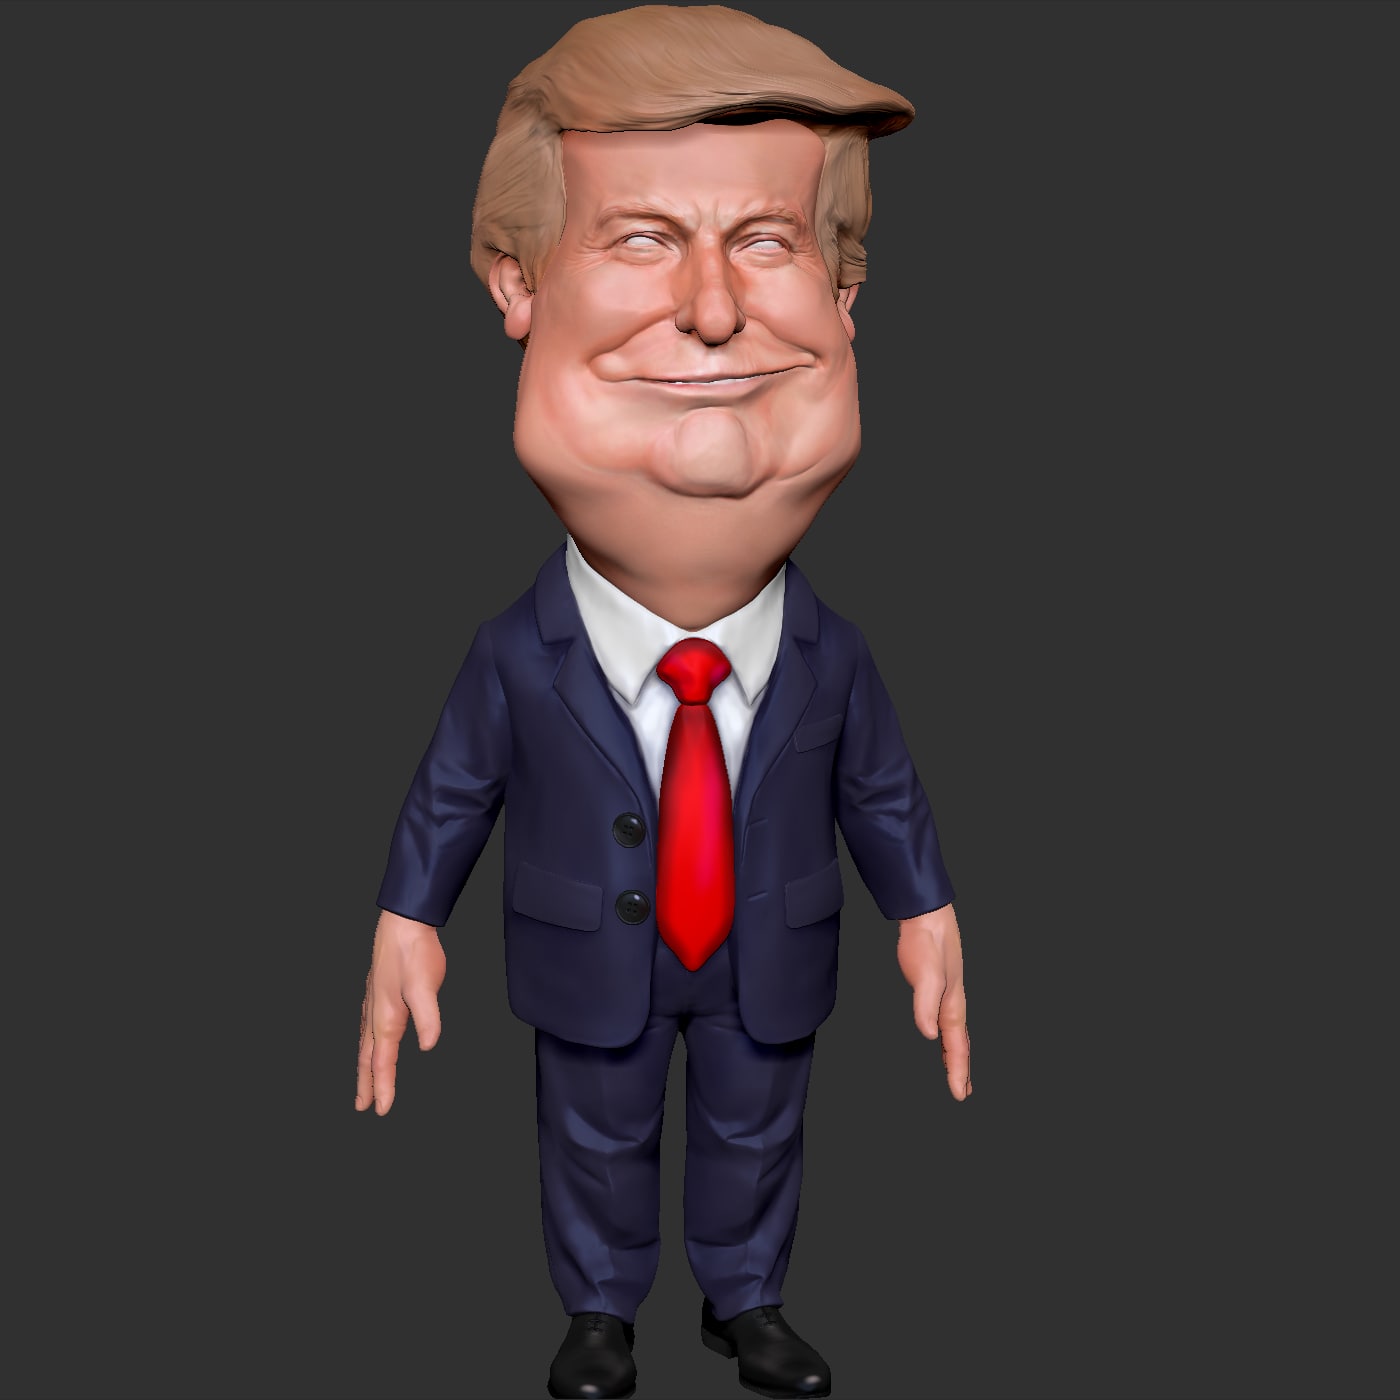 3D Donald Trump Cartoon figure 3D Model 